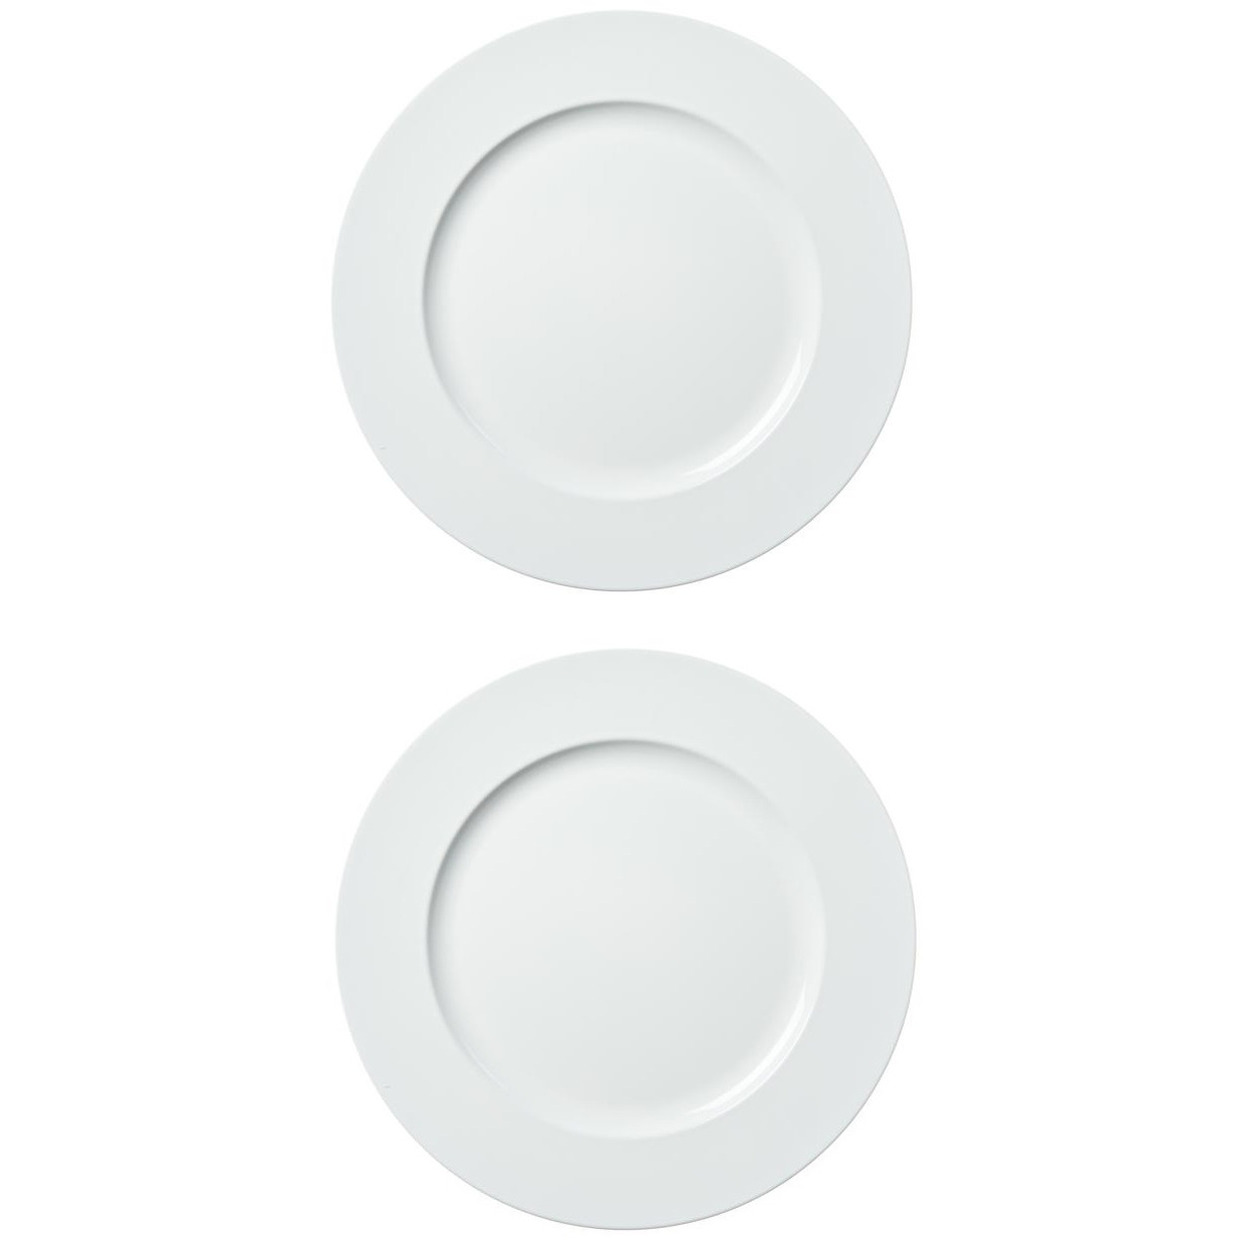 4x stuks diner borden-onderborden wit 33 cm